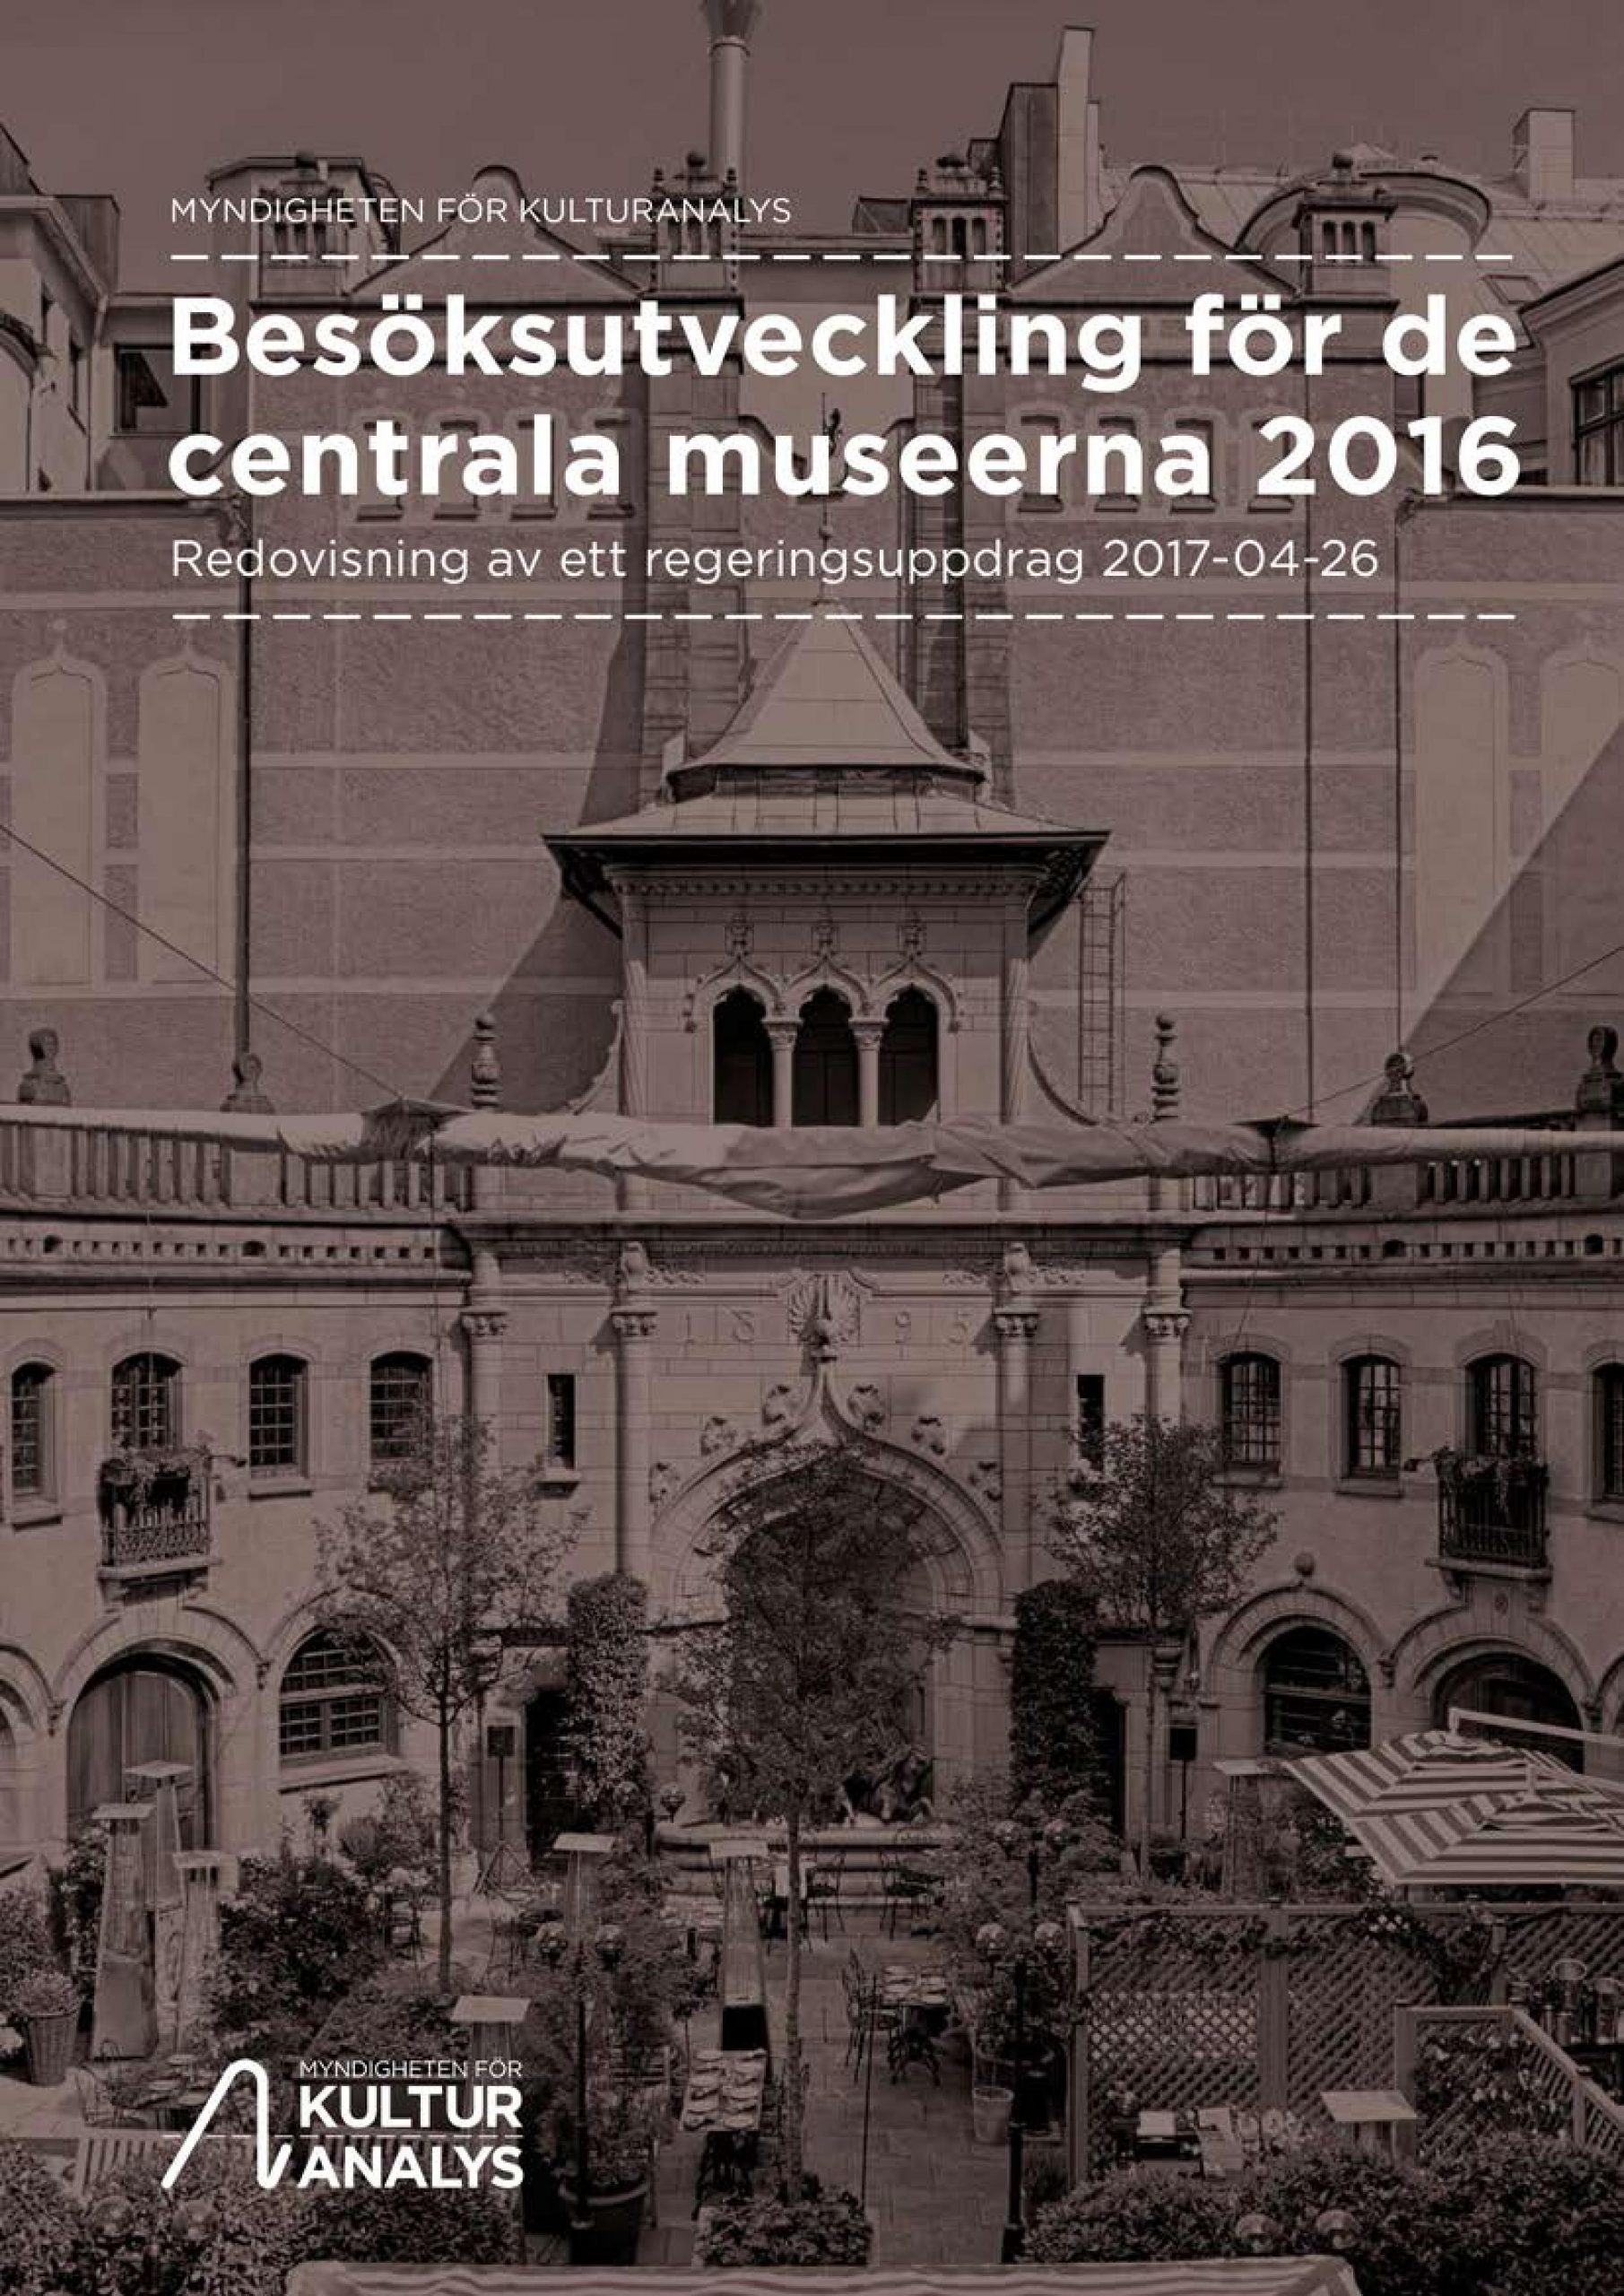 Omslagsbild Besöksutveckling centrala museer 2016